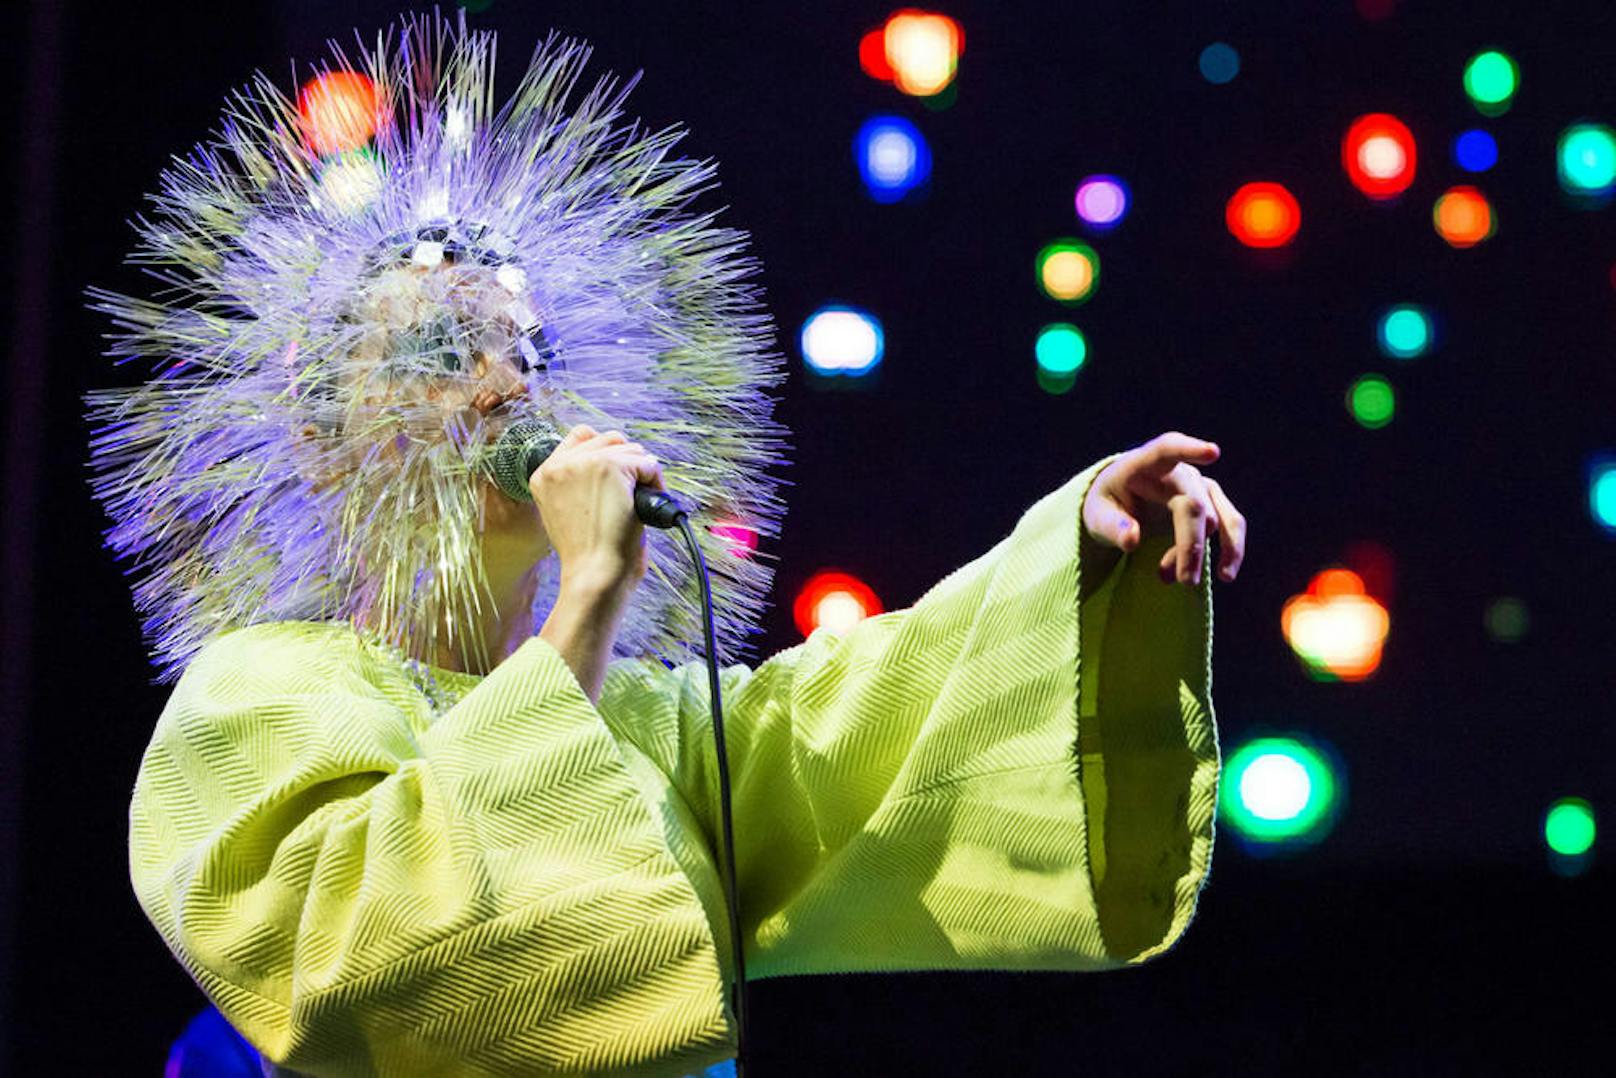 Björk berichtete auf ihrer Facebook-Seite, dass sie von dem dänischen Regisseur Lars von Trier sexuell belästigt wurde.